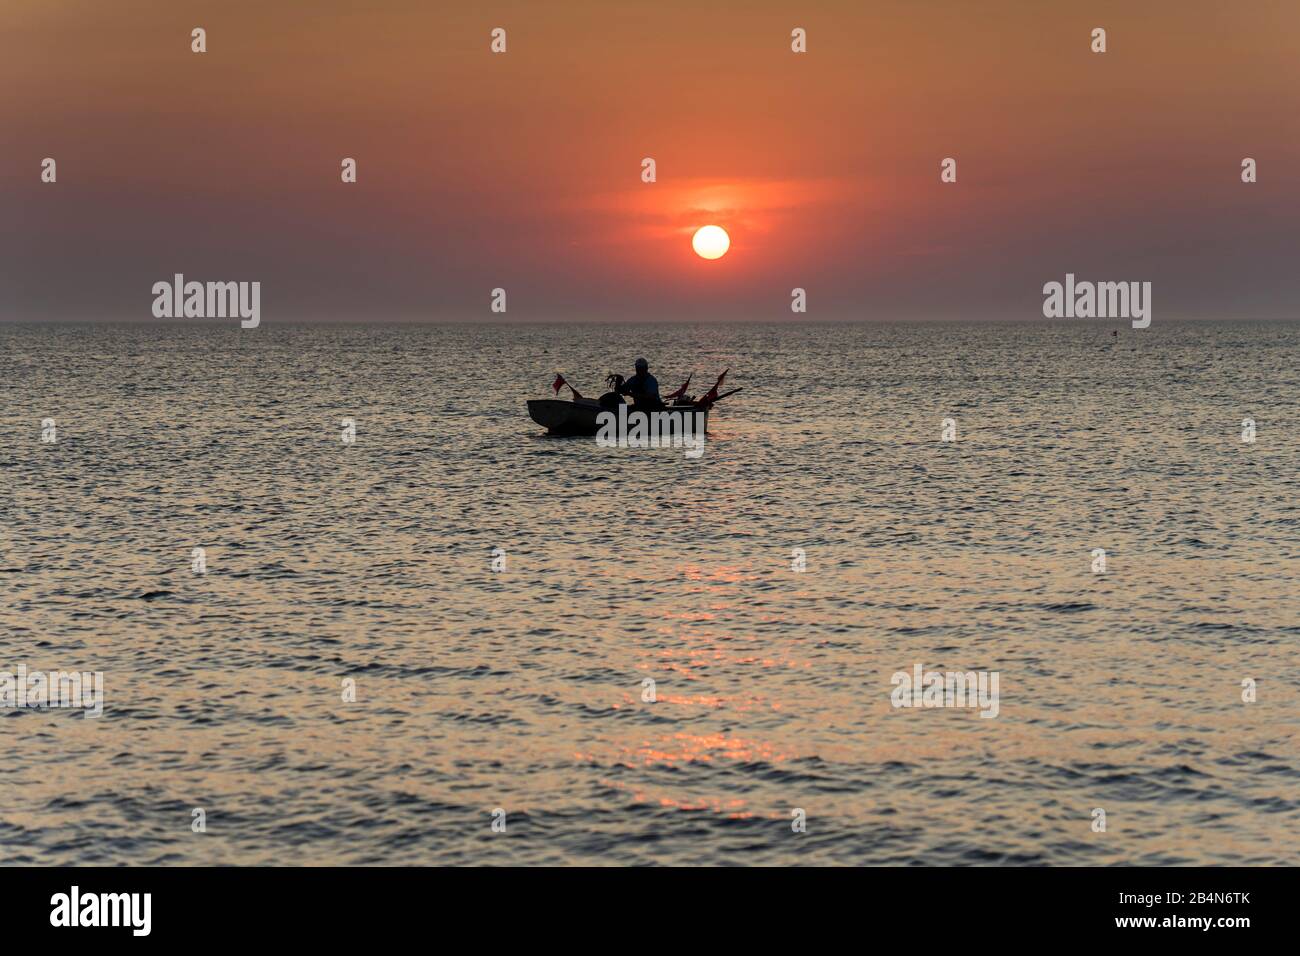 Der Strand an der Ostsee mit Spiegelung der schönen Wolken und einem Fischerboot im Abendlicht Foto de stock